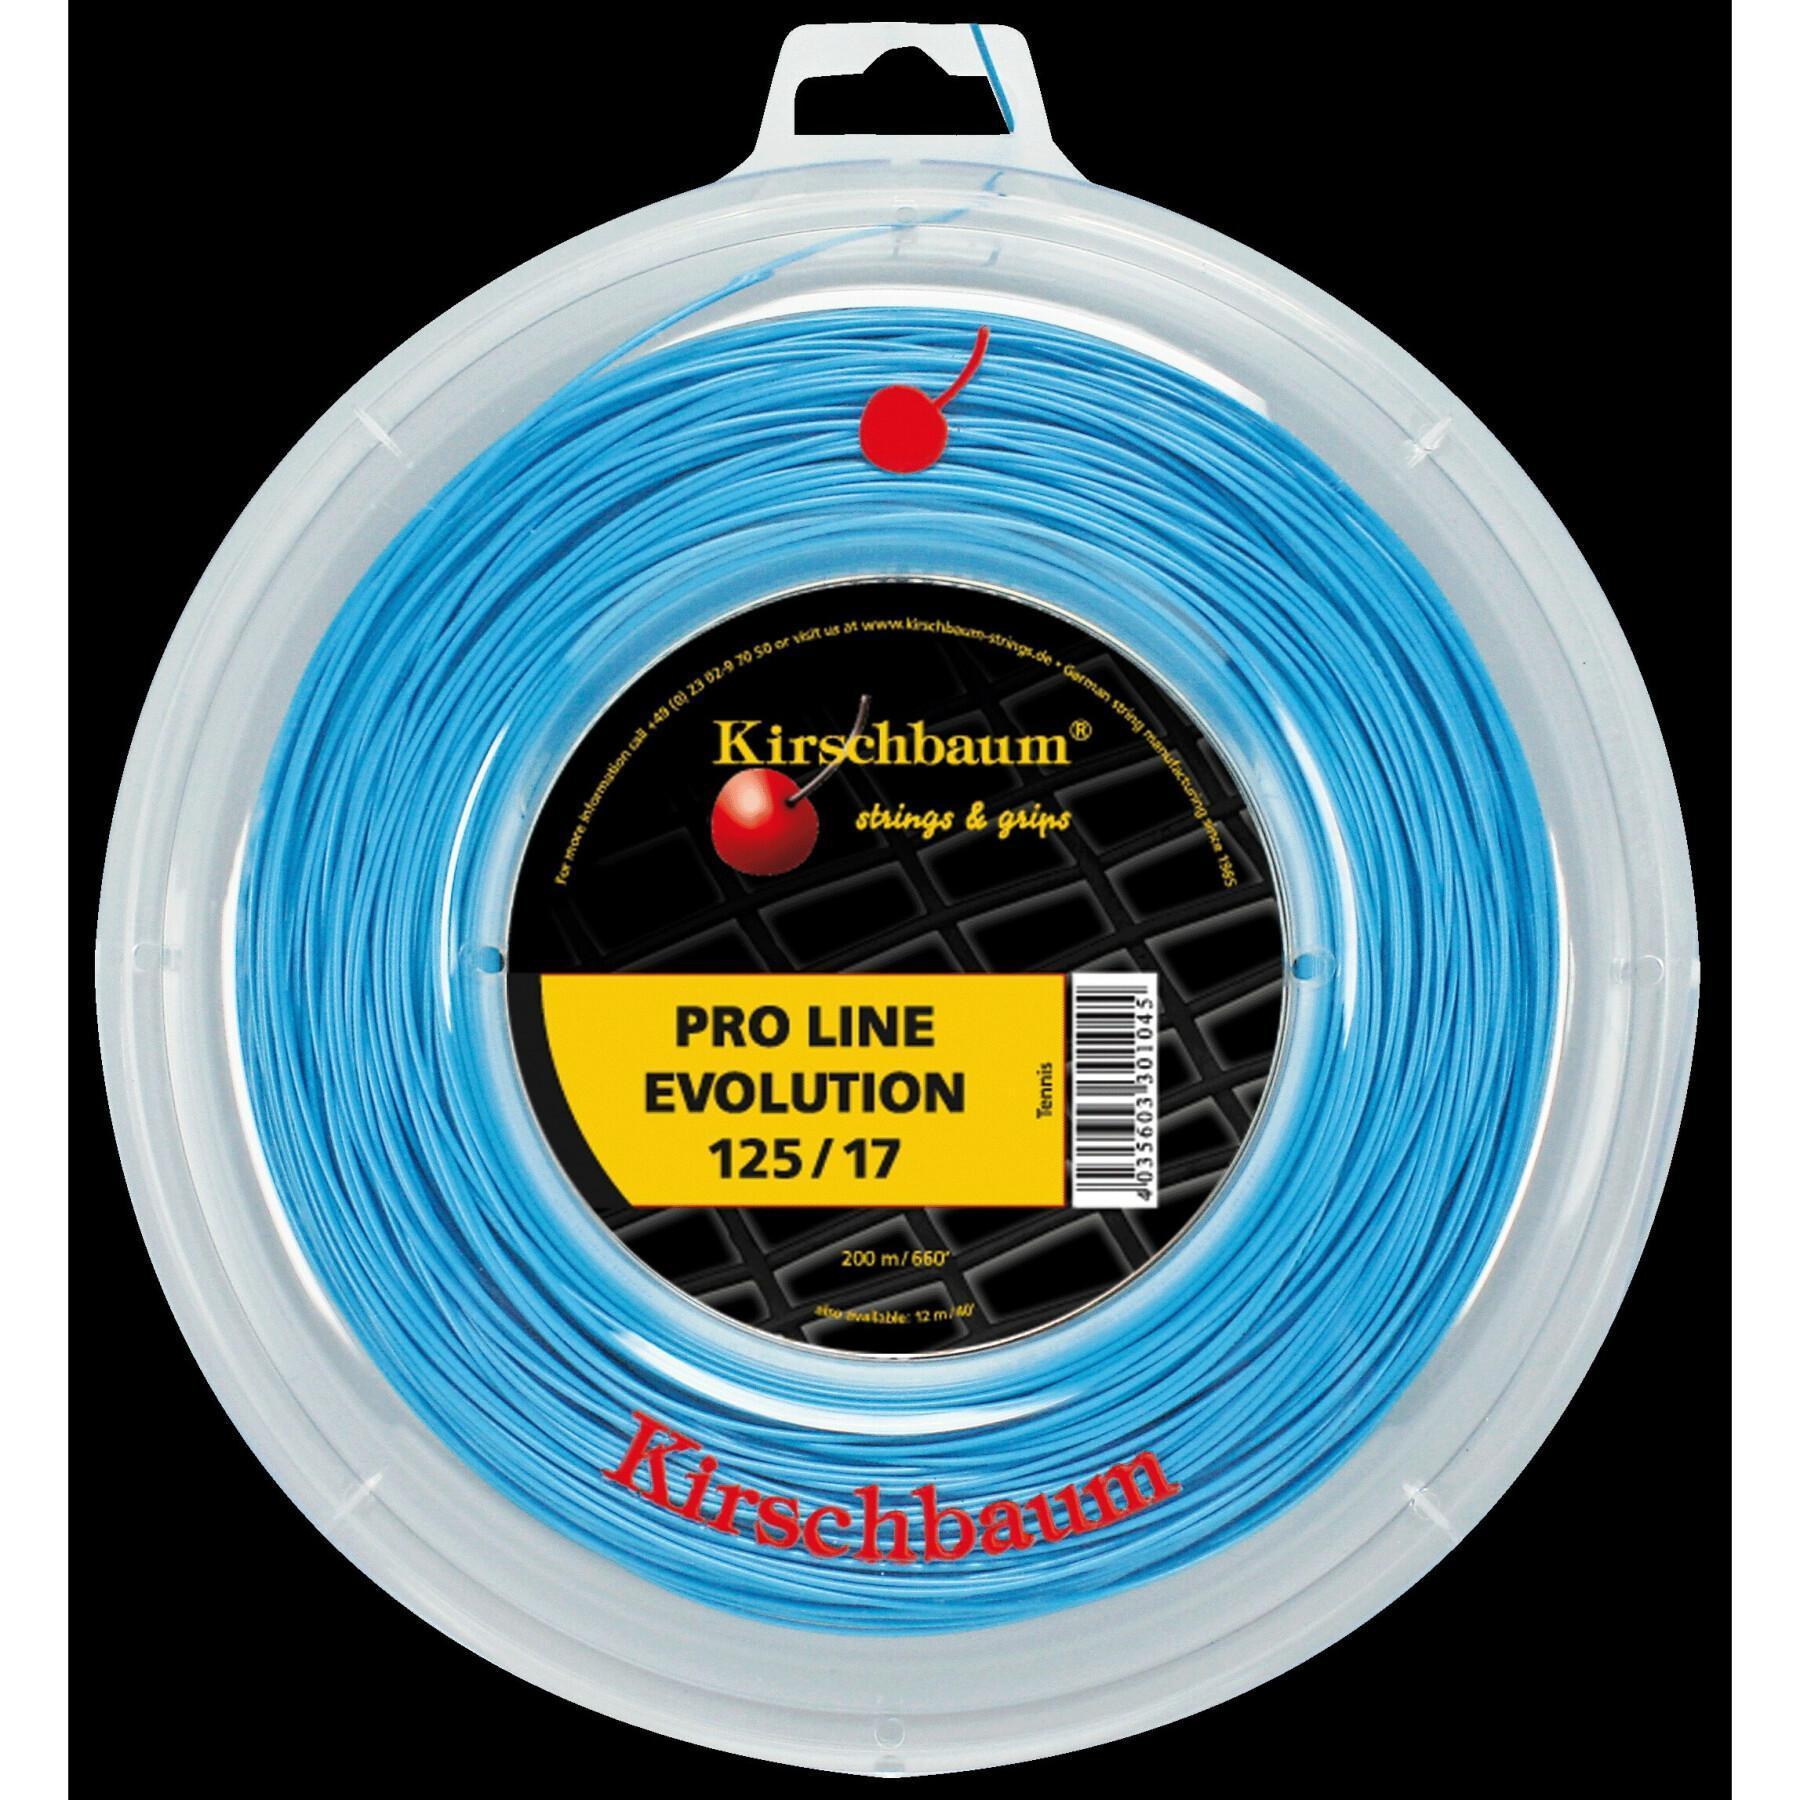 Corde da tennis Kirschbaum Pro Line Evolution 200 m